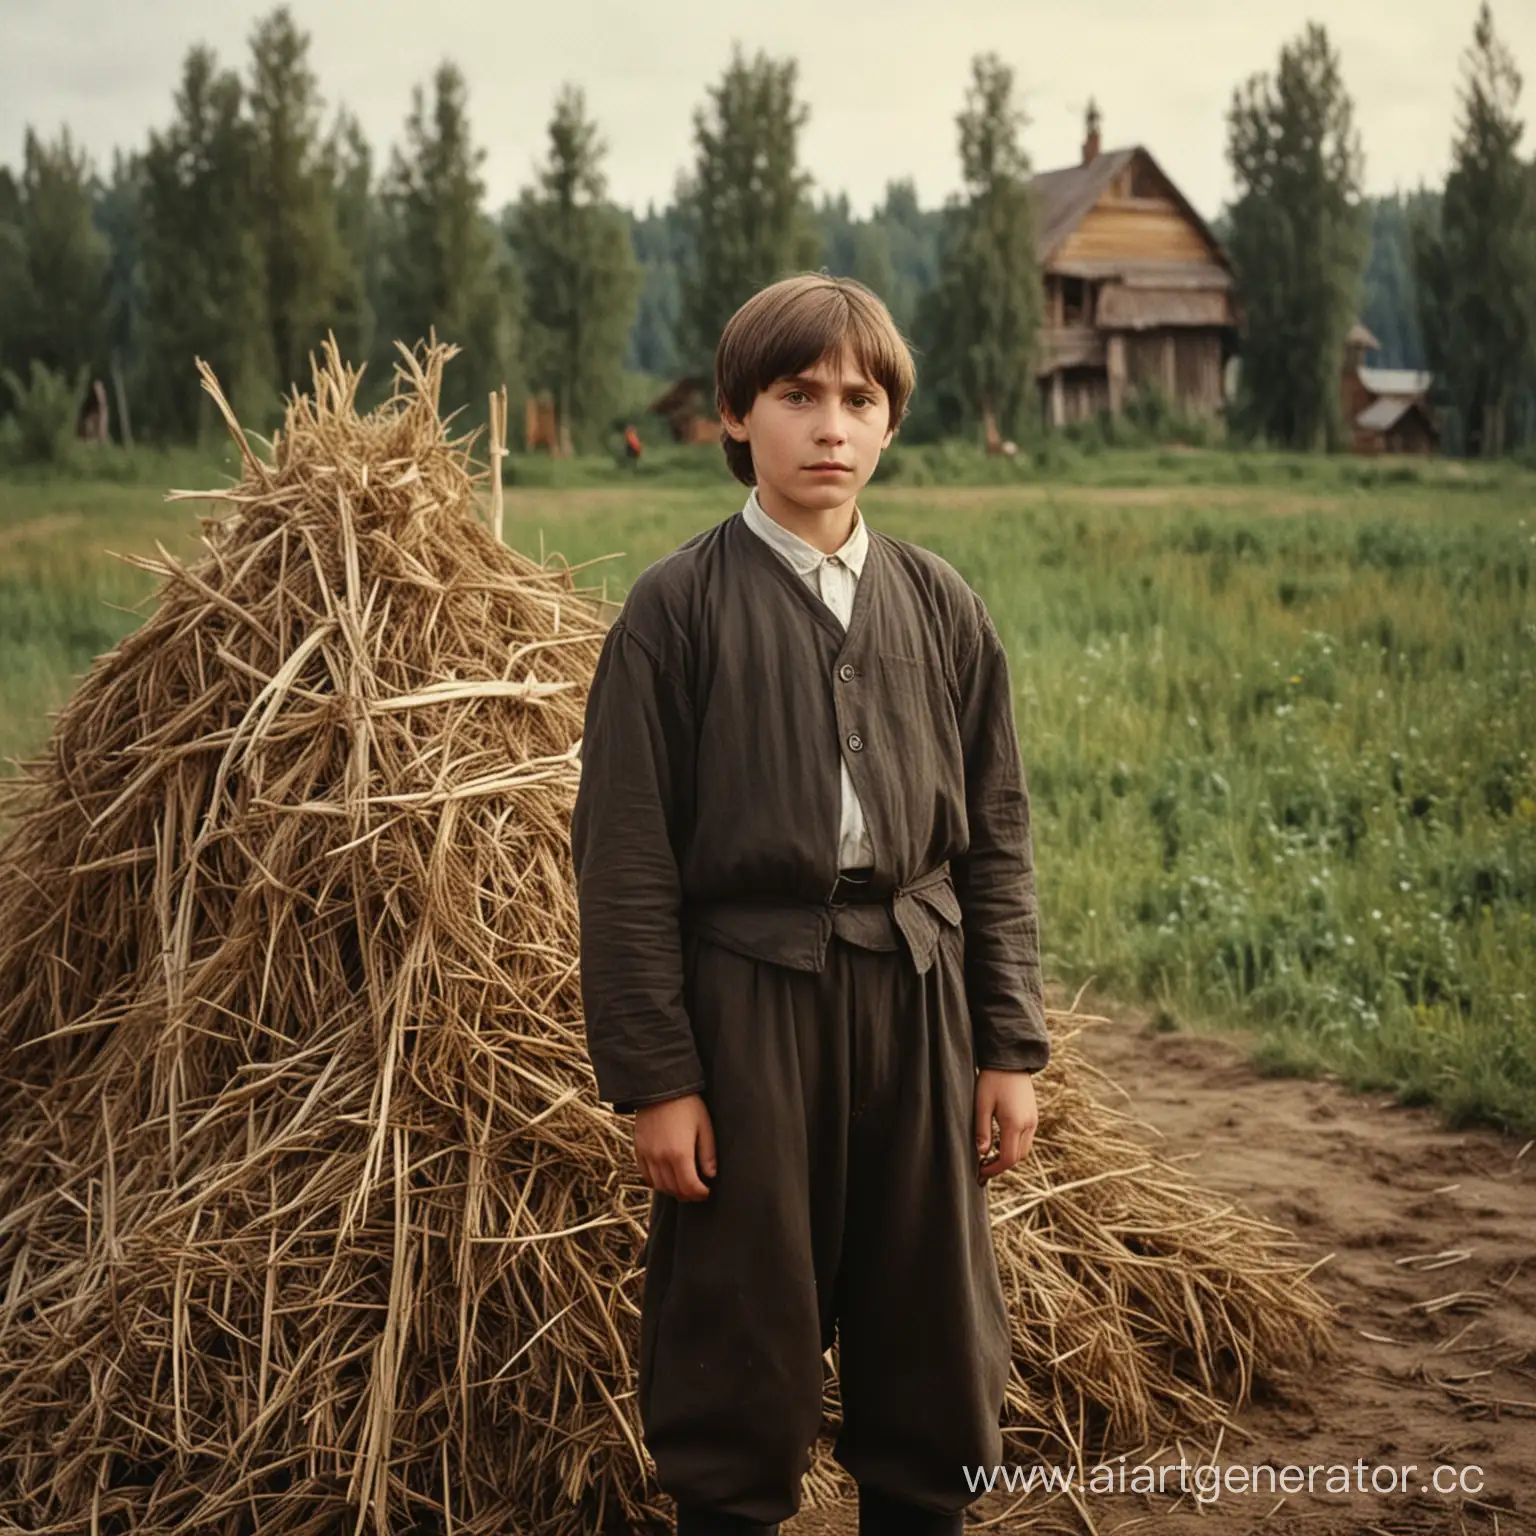 Григорий распутин в детстве (12 лет), в селе в поле с стогом сена и лесом
